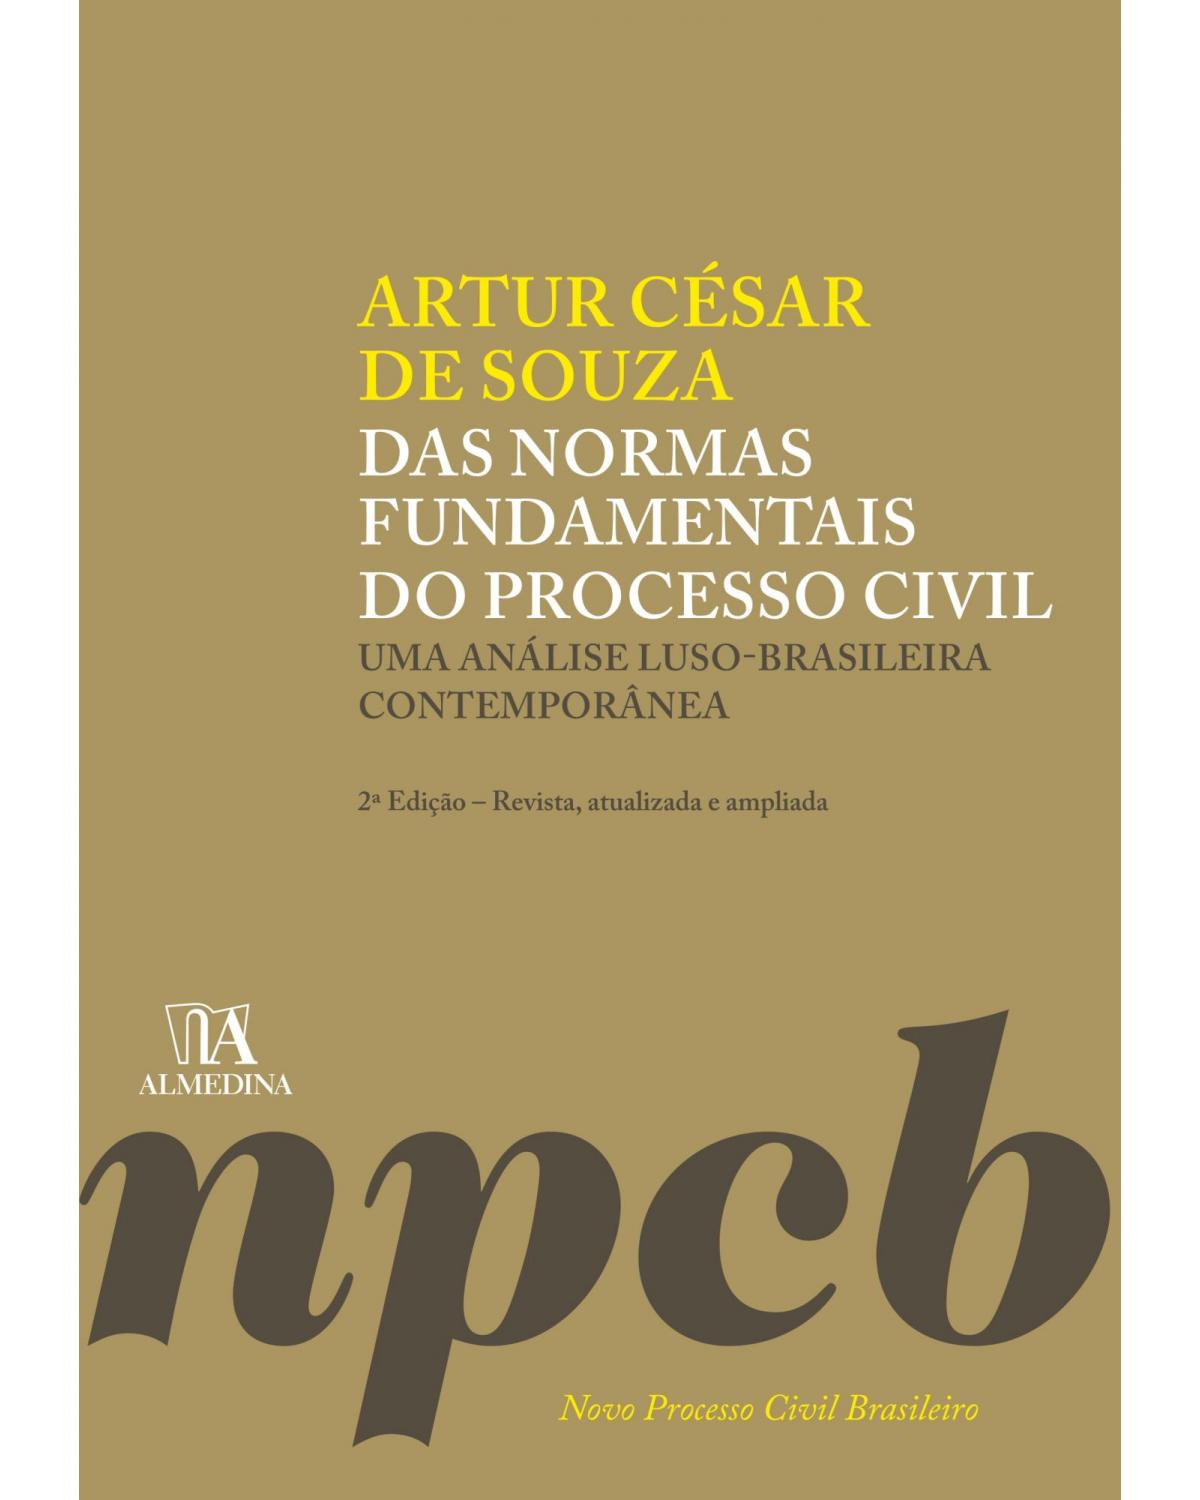 Das normas fundamentais do processo civil: Uma análise luso-brasileira contemporânea - 2ª Edição | 2020